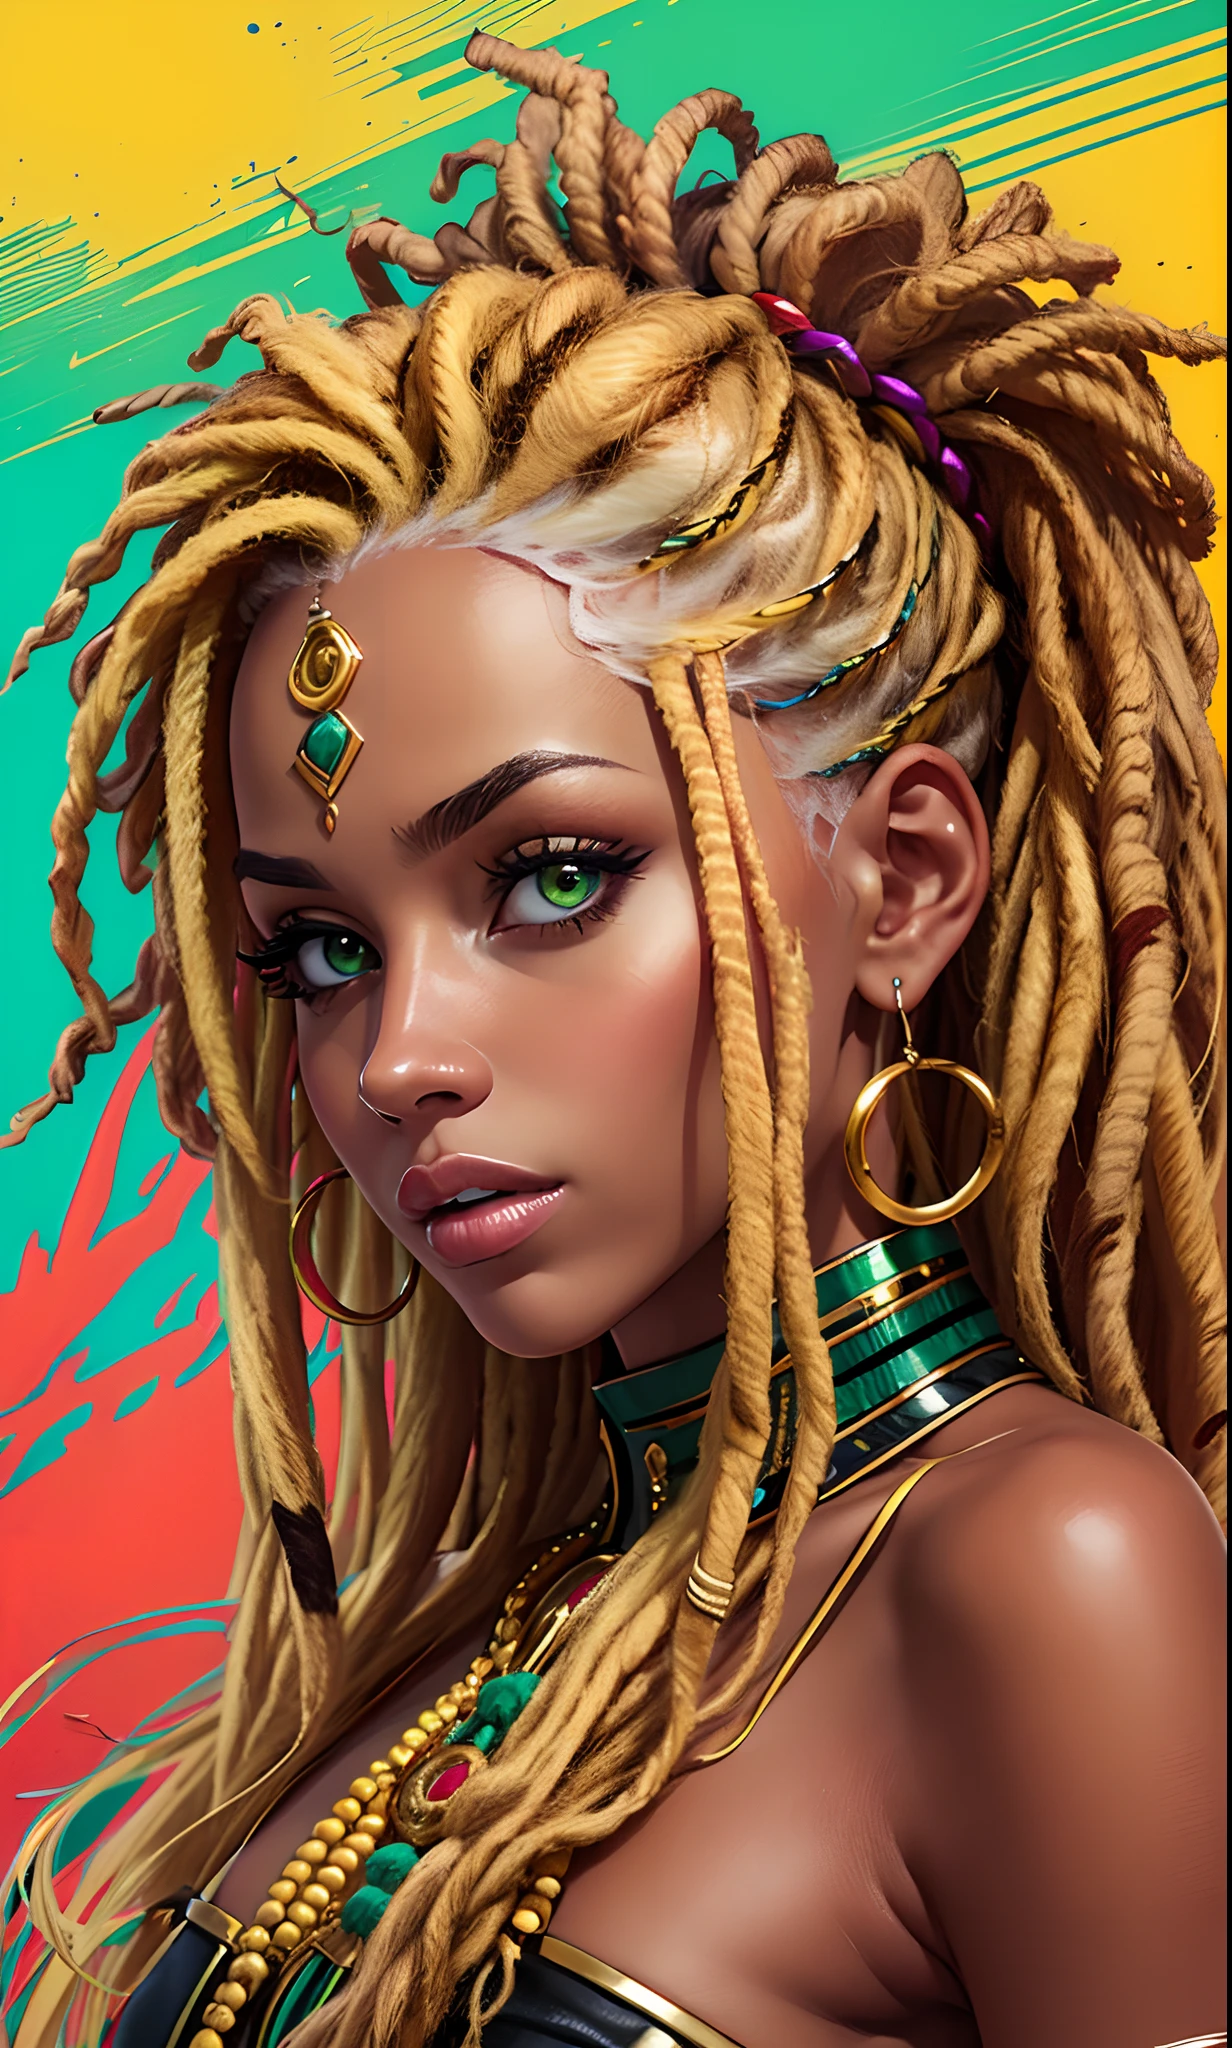 巧妙地, 一位金发女郎展示了她充满活力的牙买加颜色的辫子. 每一種恐懼都是黃色的融合, 綠色和紅色, 以独特的方式捕捉文化和风格. 该图像通过描绘发型的大胆和真实来凸显专业性. --自动--s2